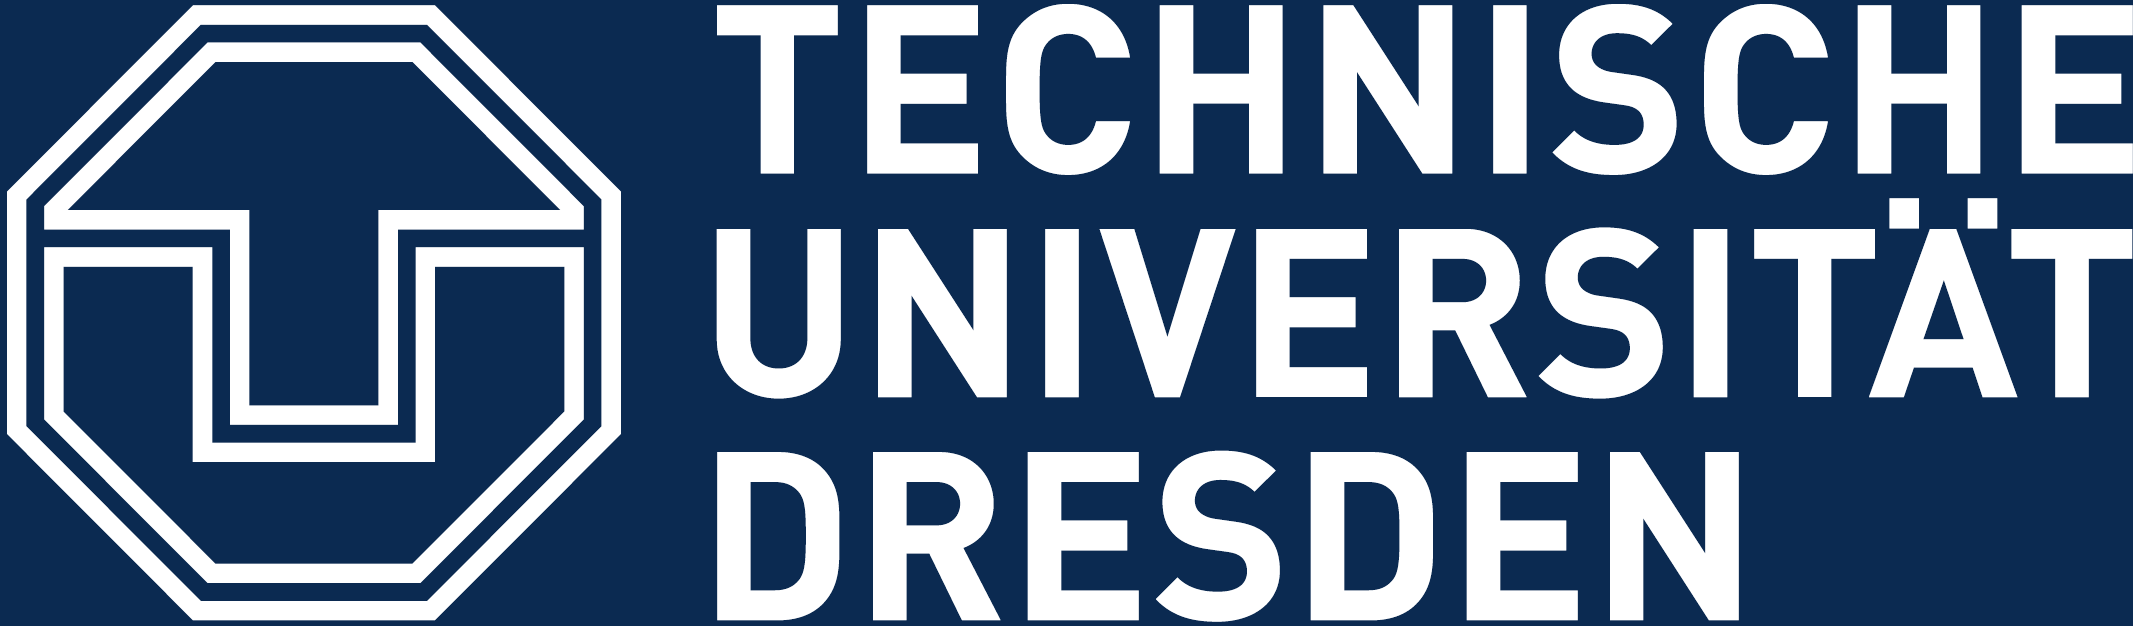 Technische Universität Dresden Logo